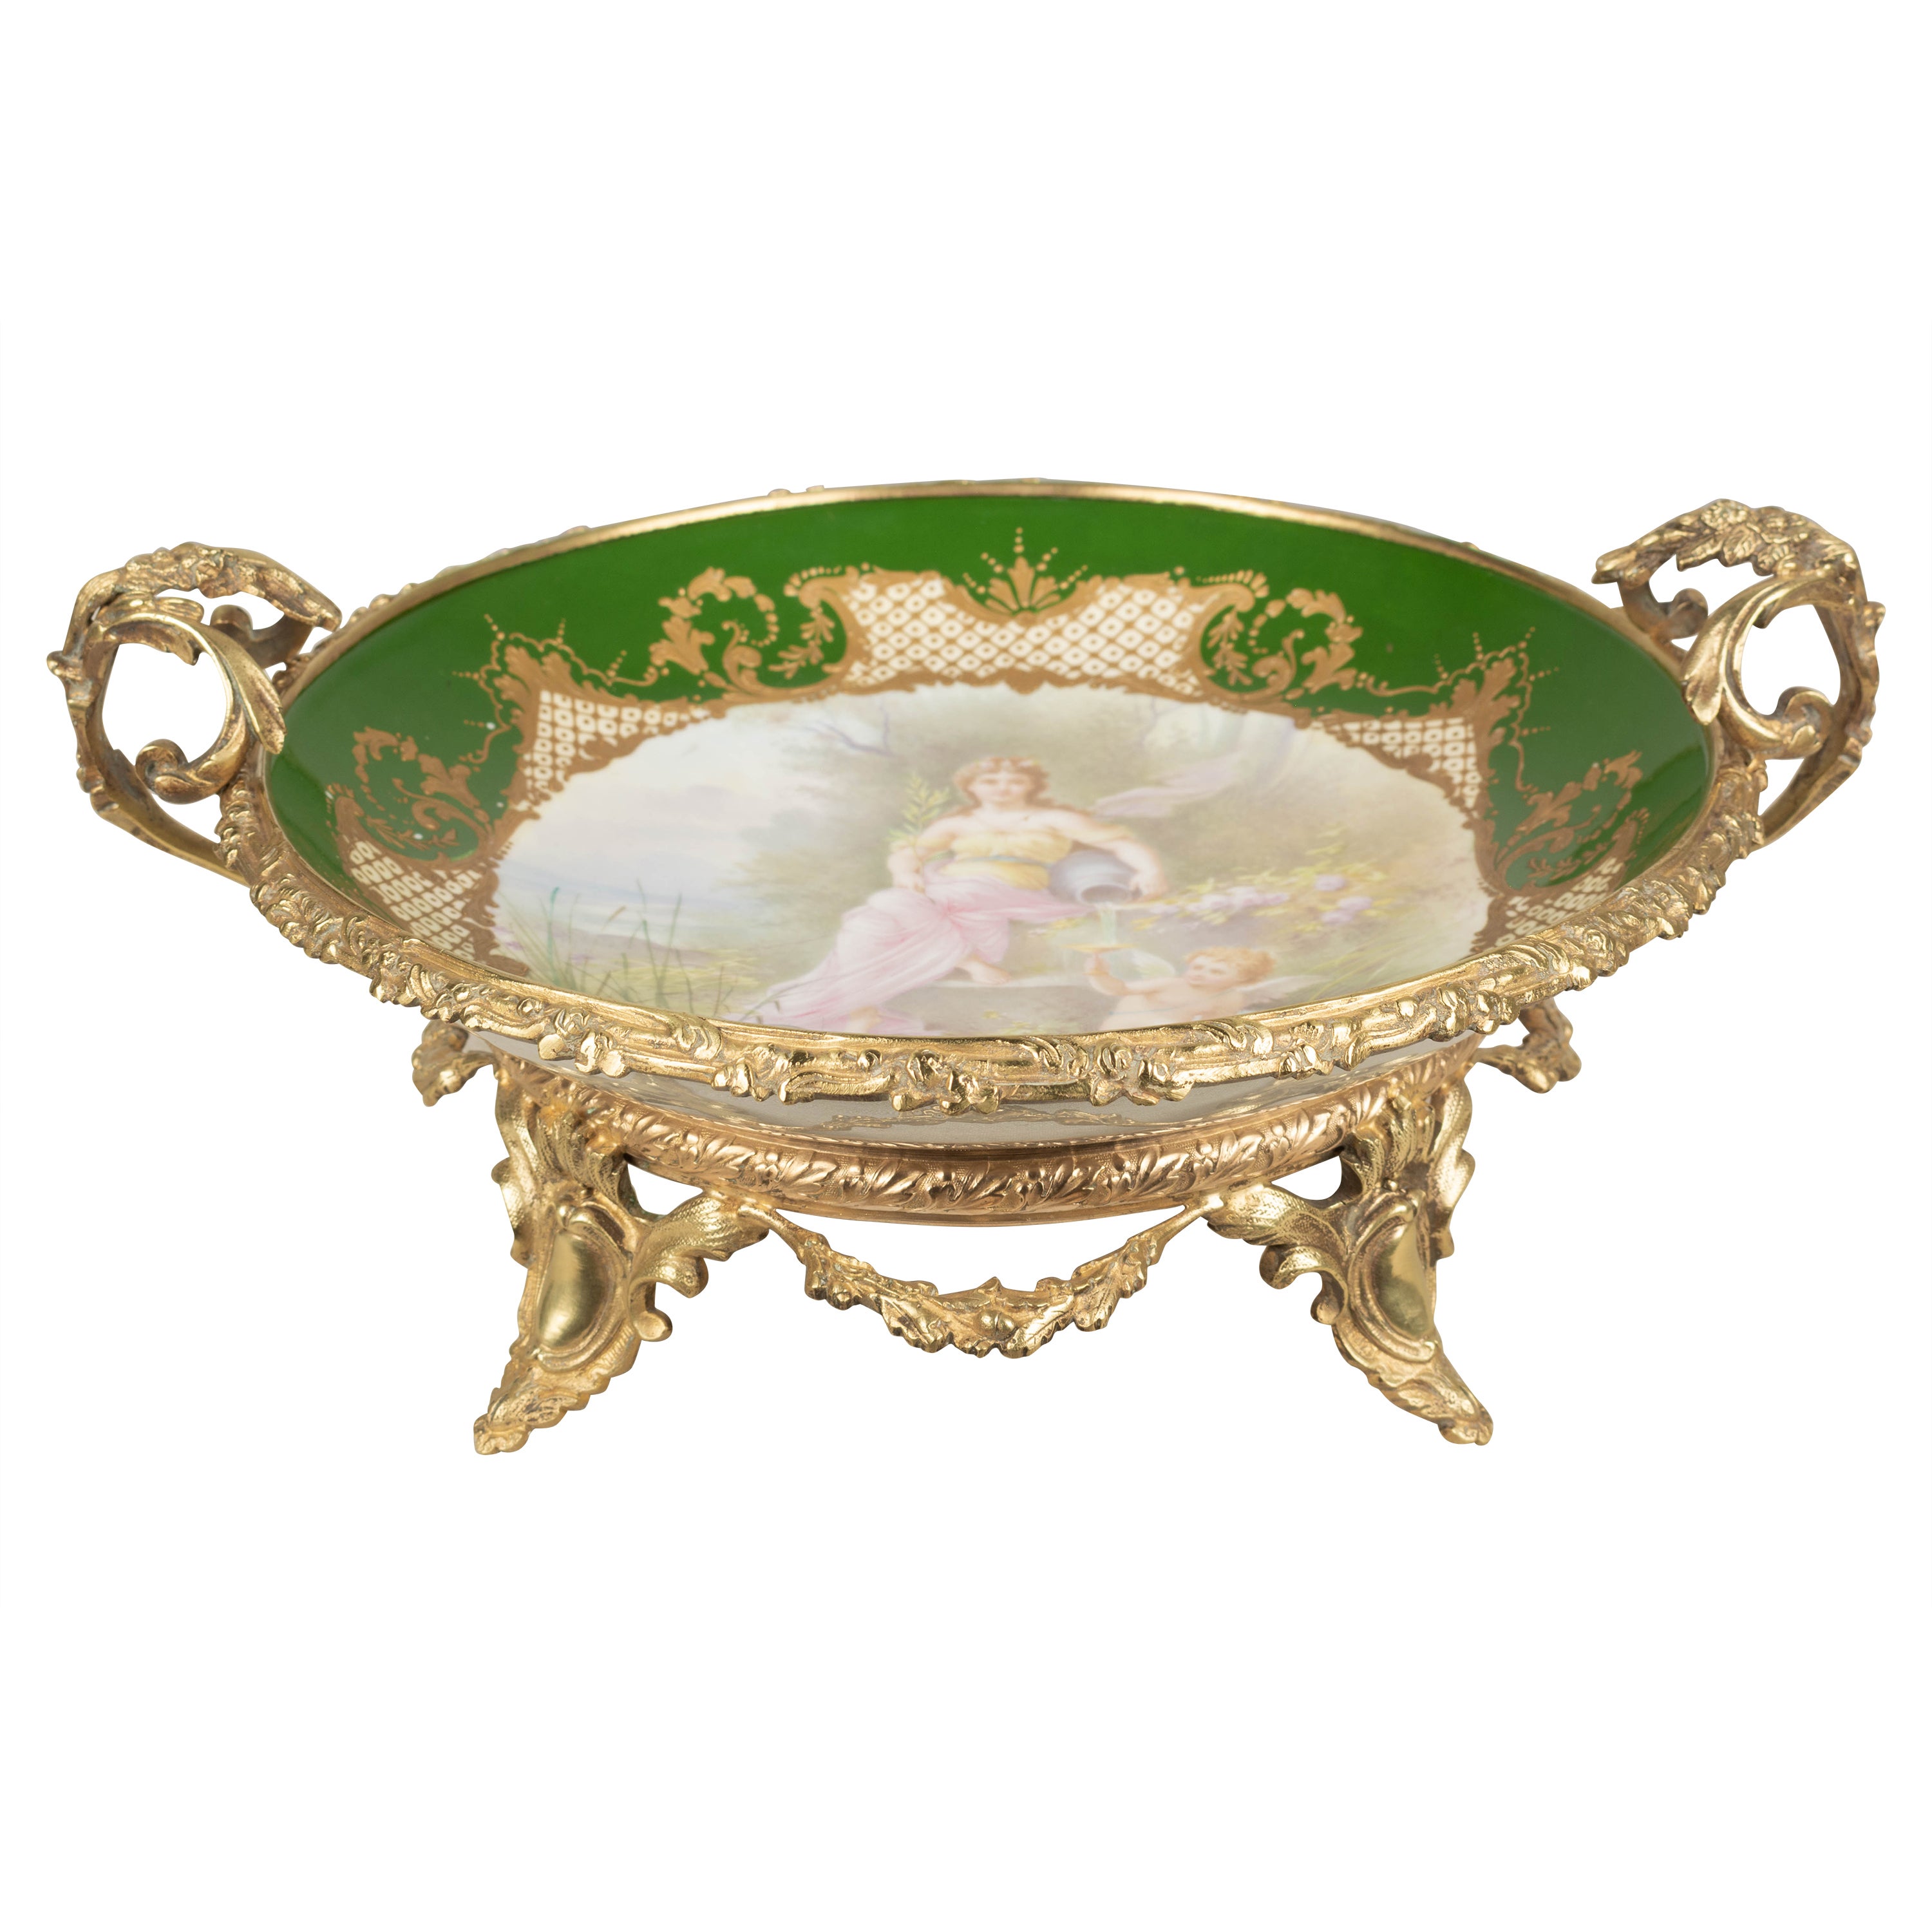 Coupe de centre de table en porcelaine de Sèvres ornée de bronze doré du 19e siècle